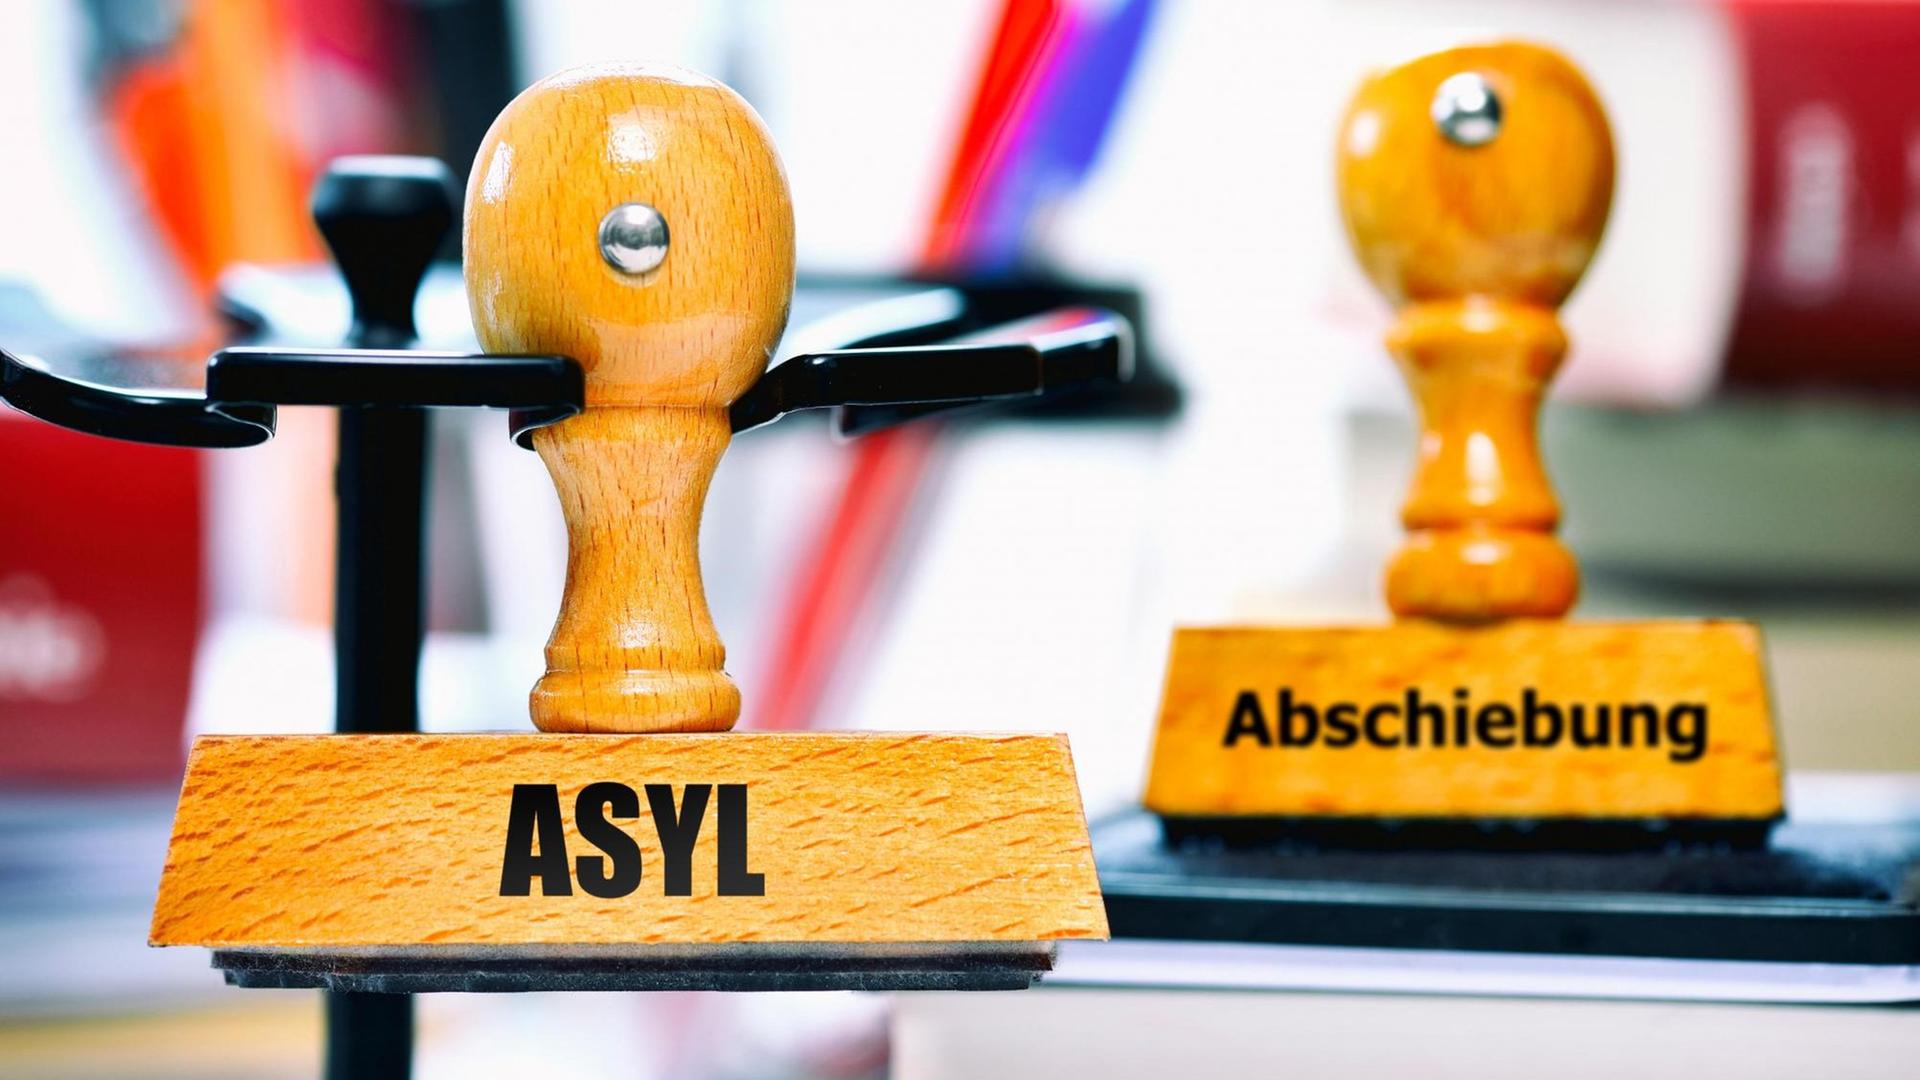 Auf einem Schreib-Tisch sind 2 Stempel mit den Worten "Asyl" und "Abschiebung".